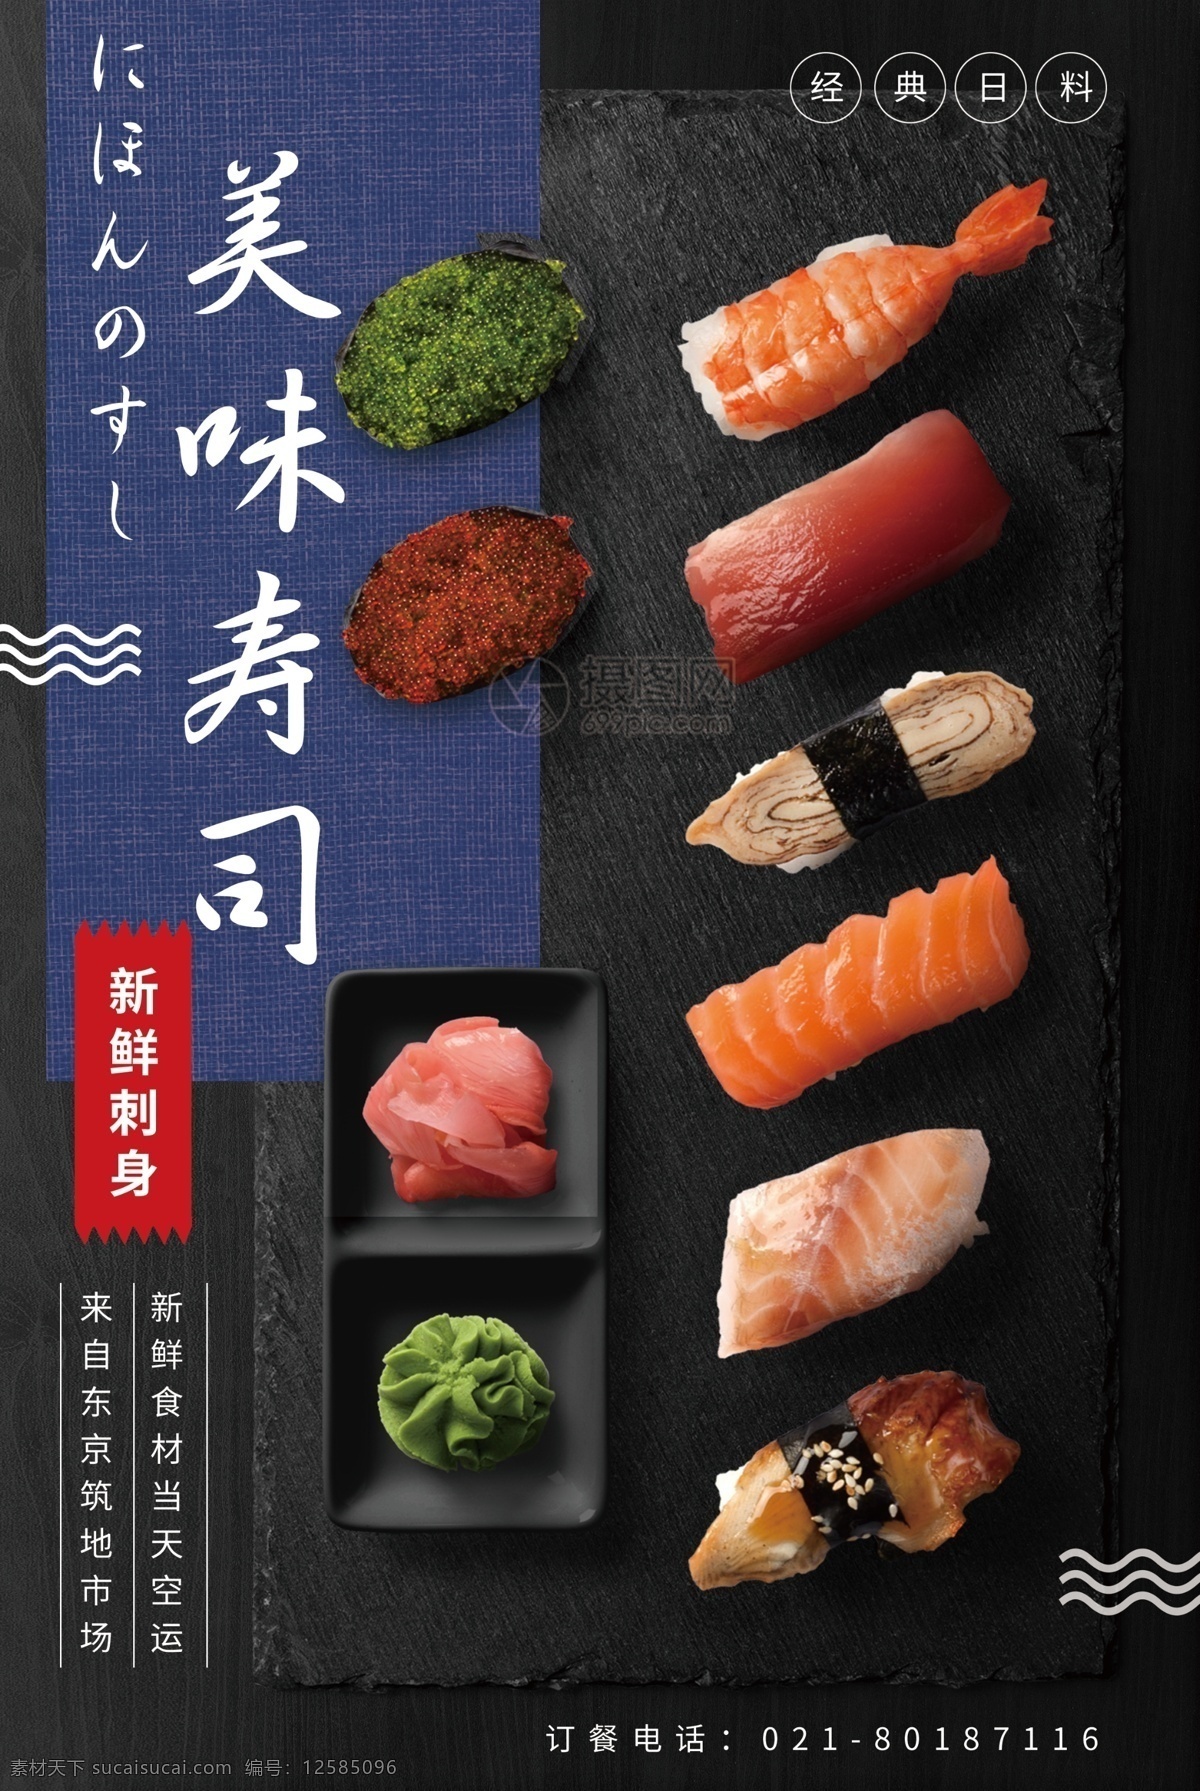 日本料理 美味 寿司 海报 日料 食品 食物 美食 刺身 生鱼片 新鲜 食材 空运 料理 美味寿司